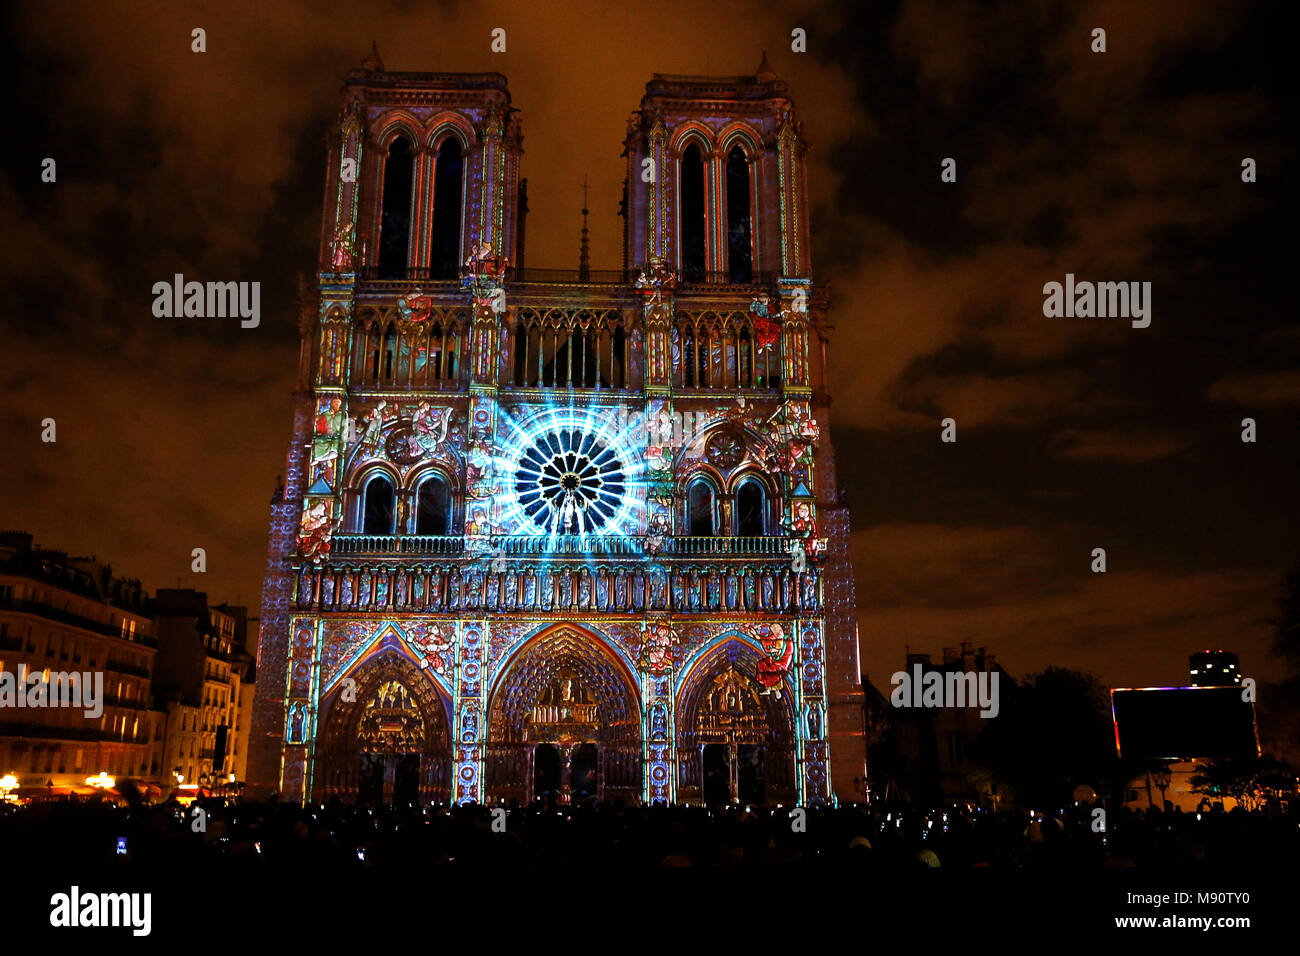 Spectacle son et lumière à la cathédrale Notre Dame de Paris, France. Banque D'Images